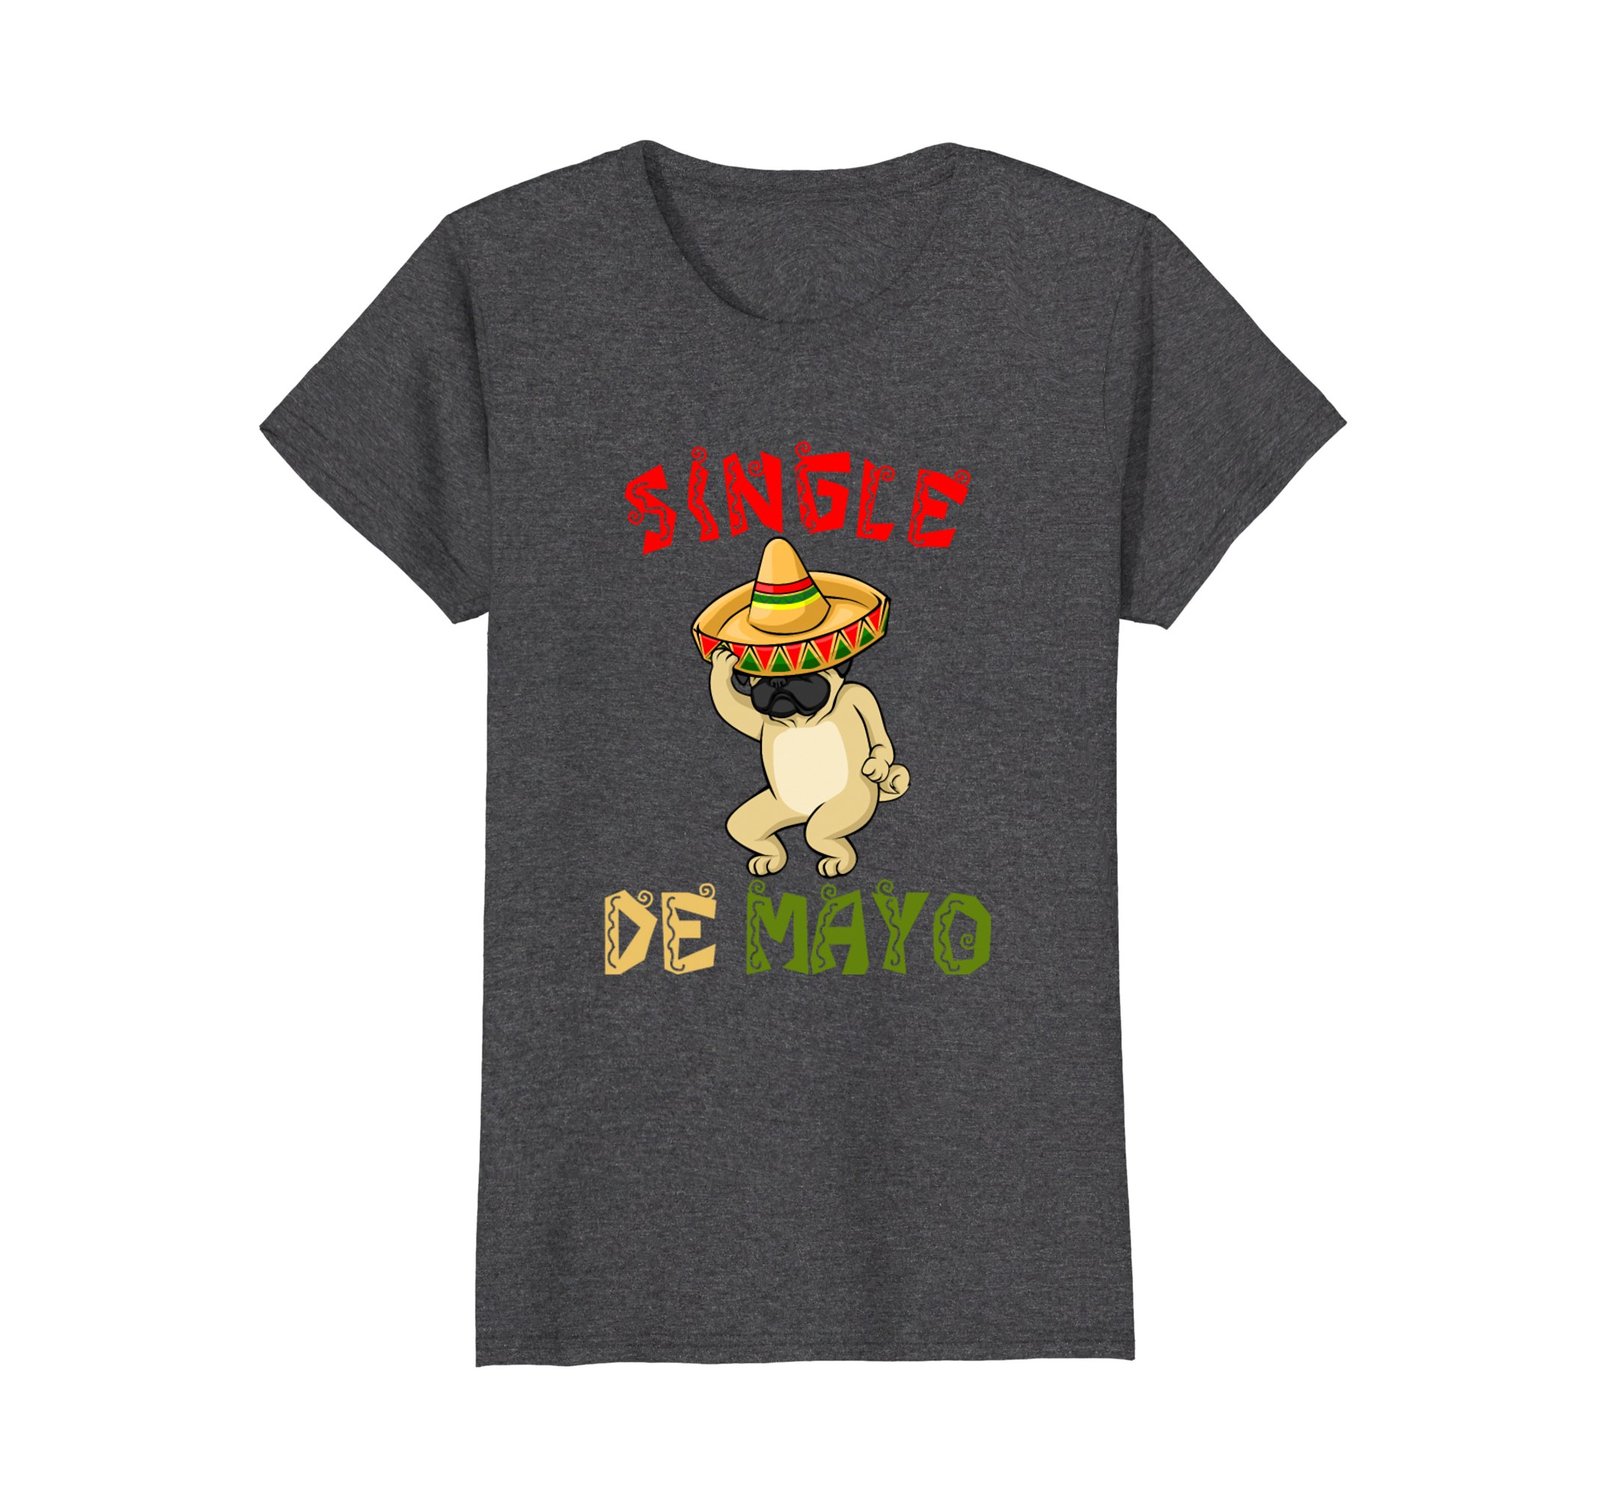 Funny Shirts - Pug Sombrero - Single De Mayo Gift T-Shirt Wowen